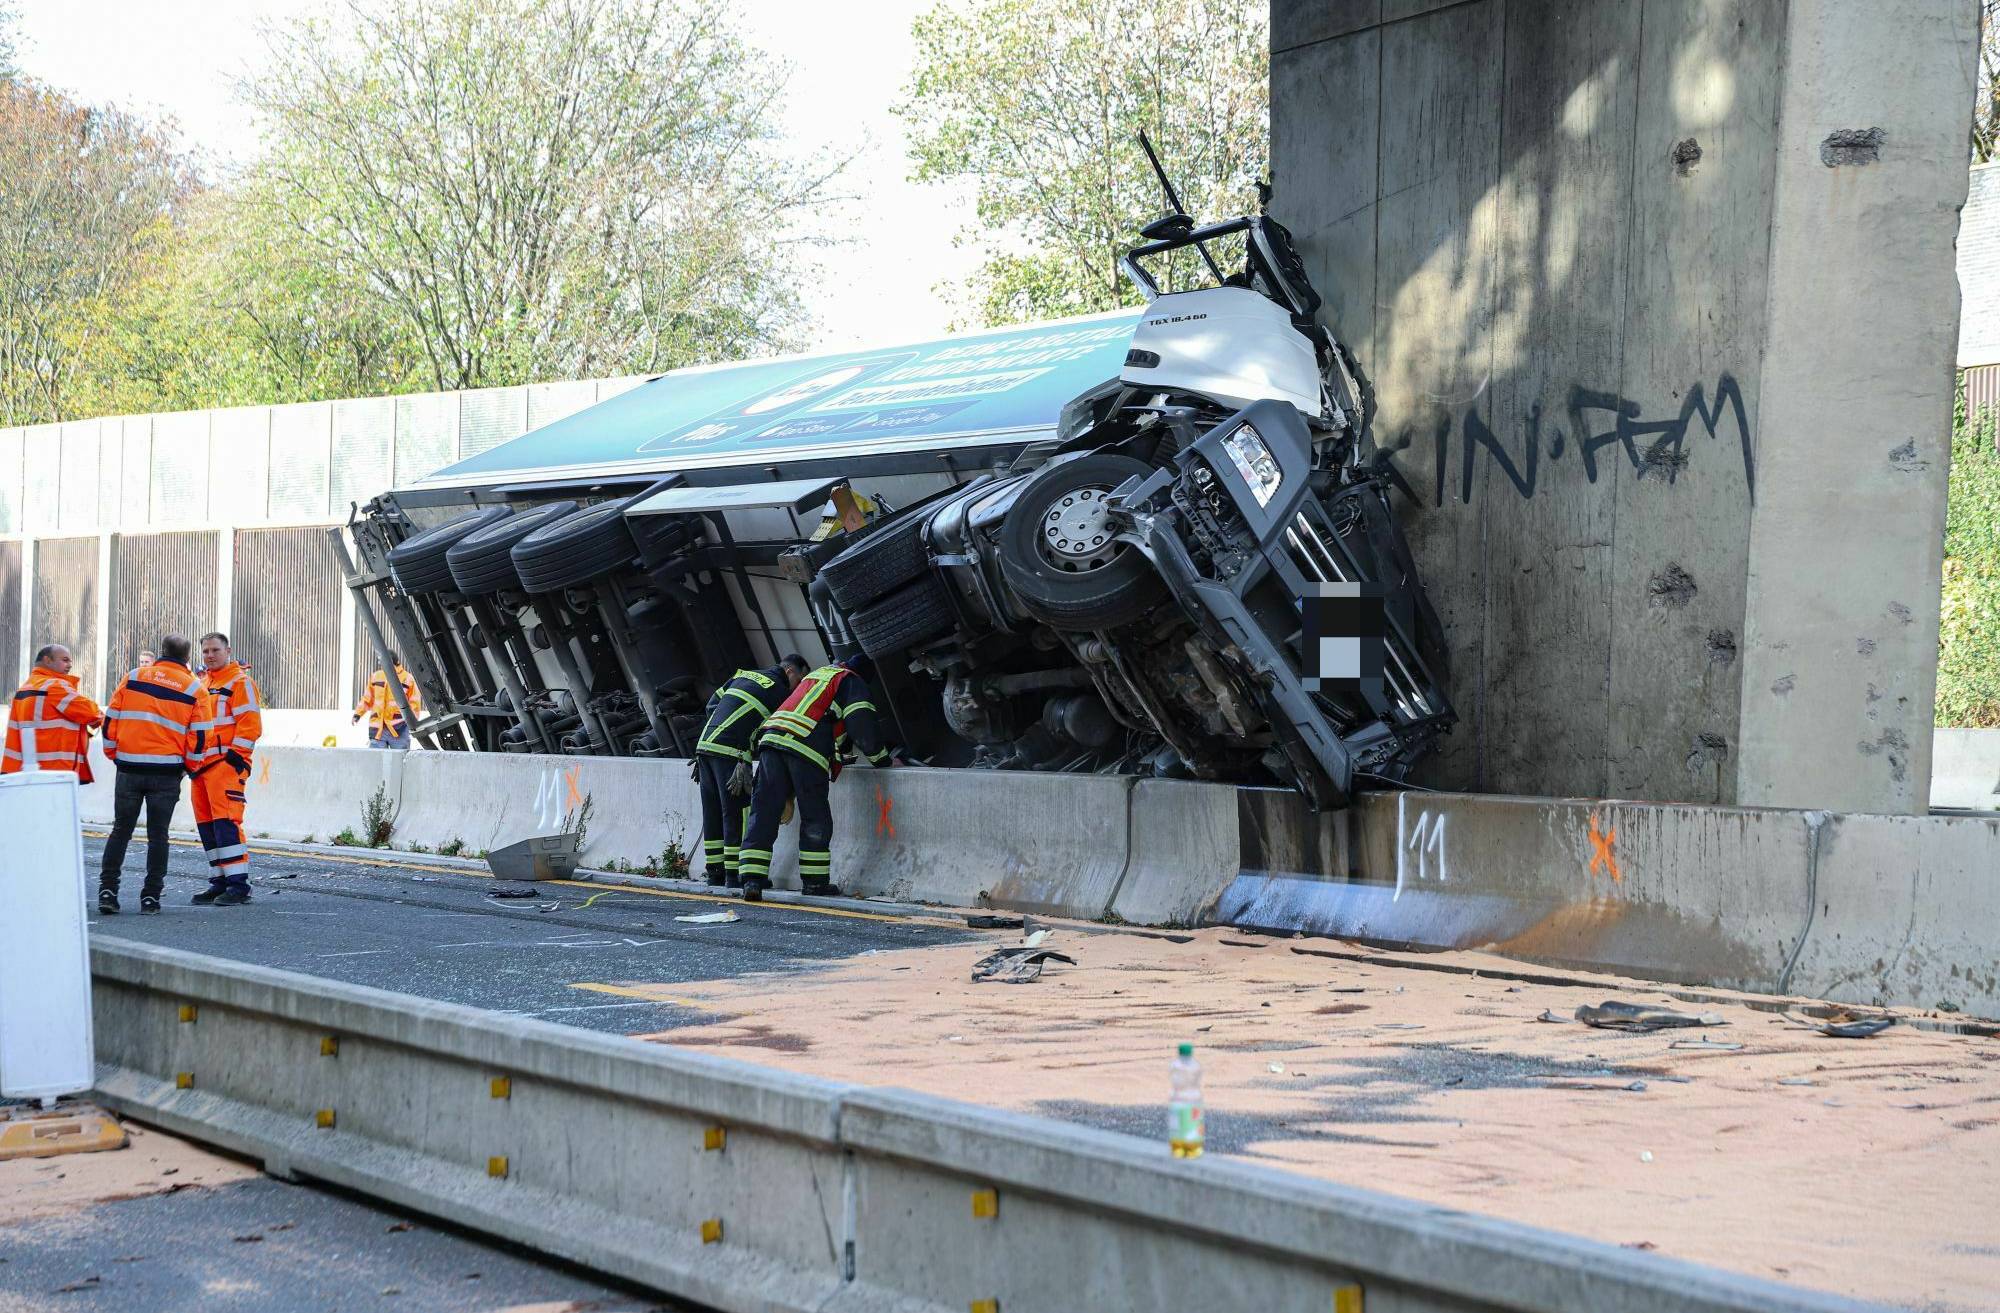 Lkw-Fahrer stirbt auf der A 46​ in Wuppertal